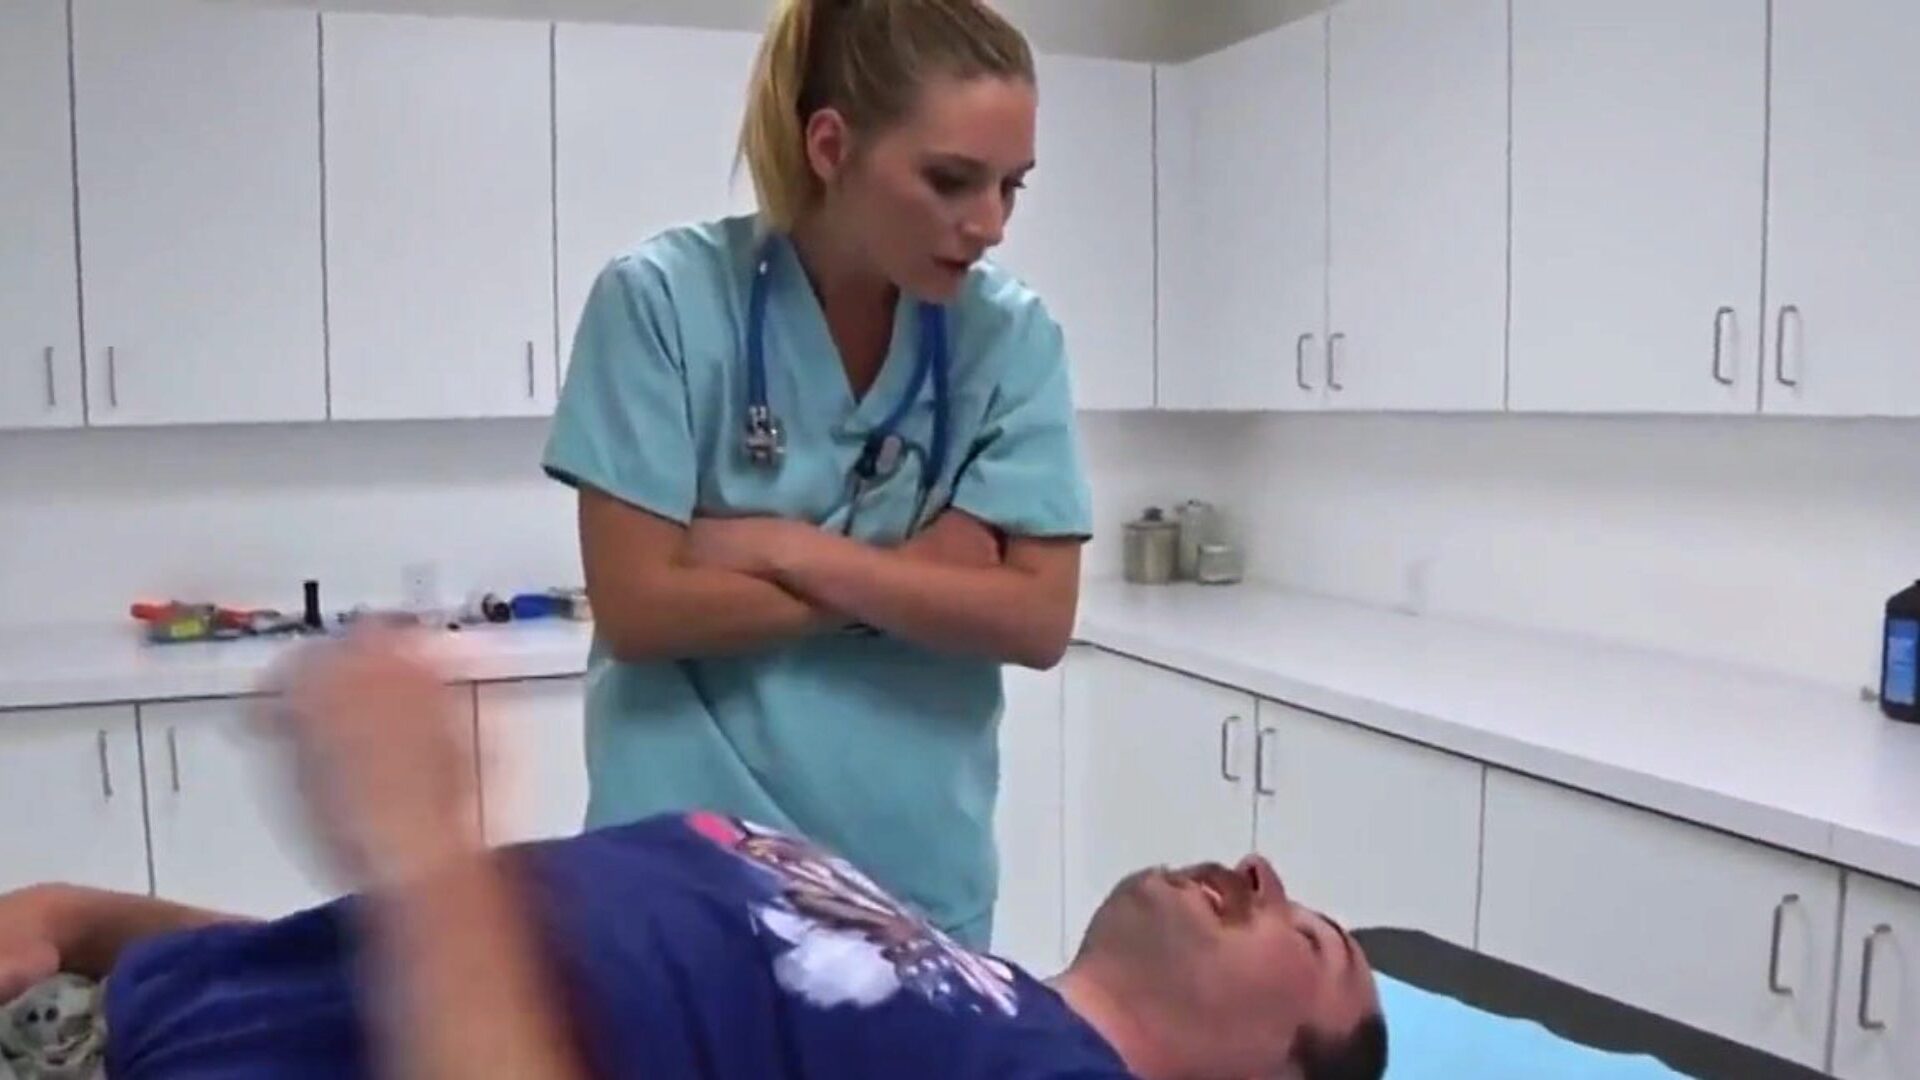 护士伸出援助之手：免费的金发碧眼的高清色情视频37-xhamster观看护士向xhamster免费提供一个手管的连接的电影场景，带有丰富的金发碧眼的灰机射液和免费的xnxc高清色情情节序列